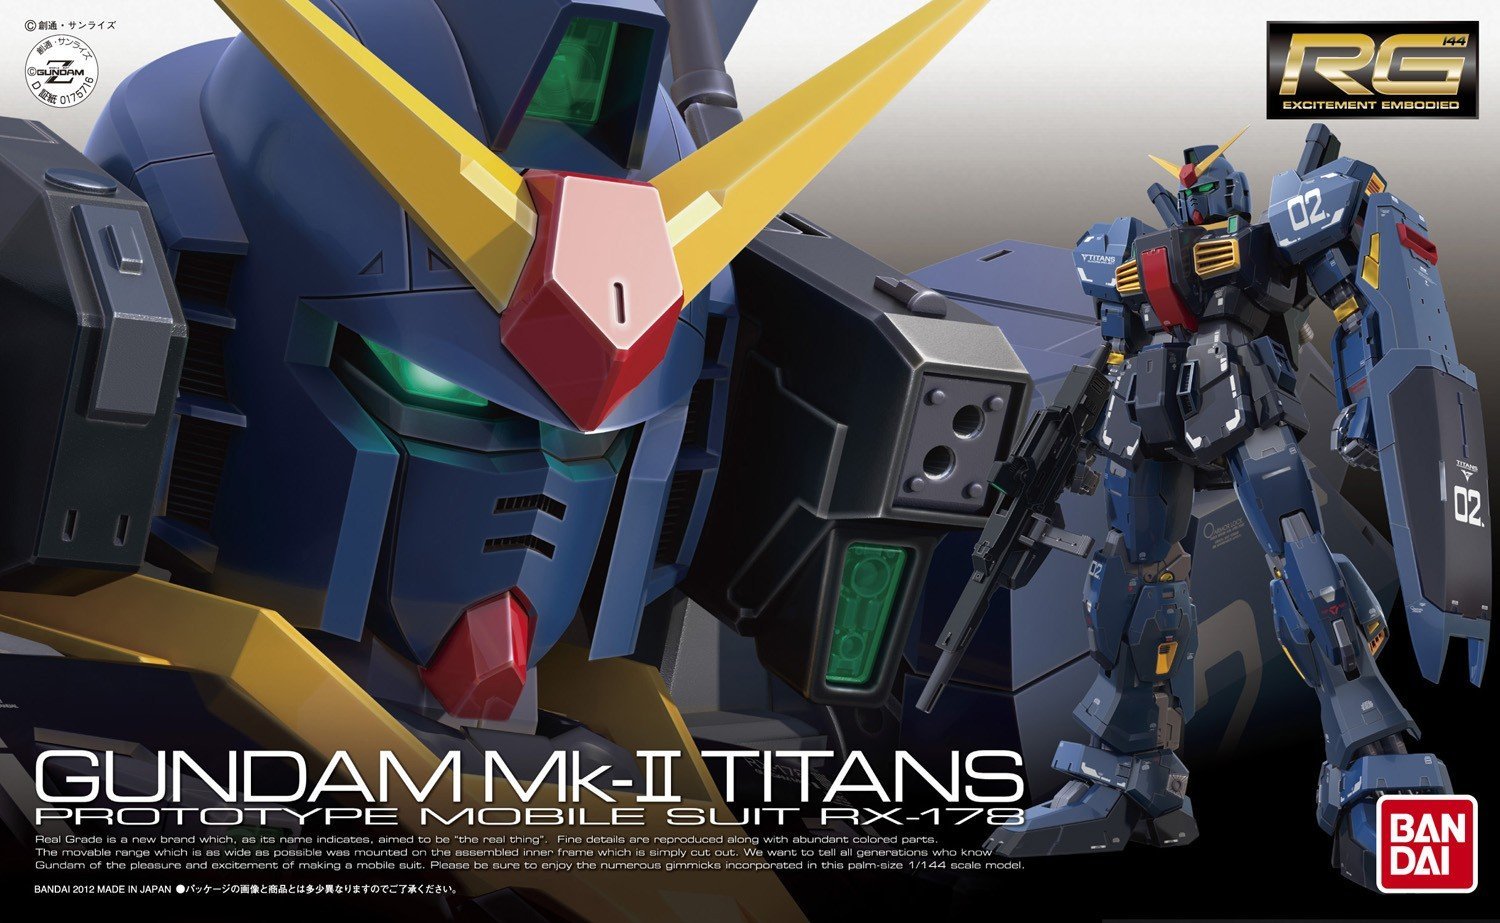 RG - RX-178 Gundam MK-II (TITANS)